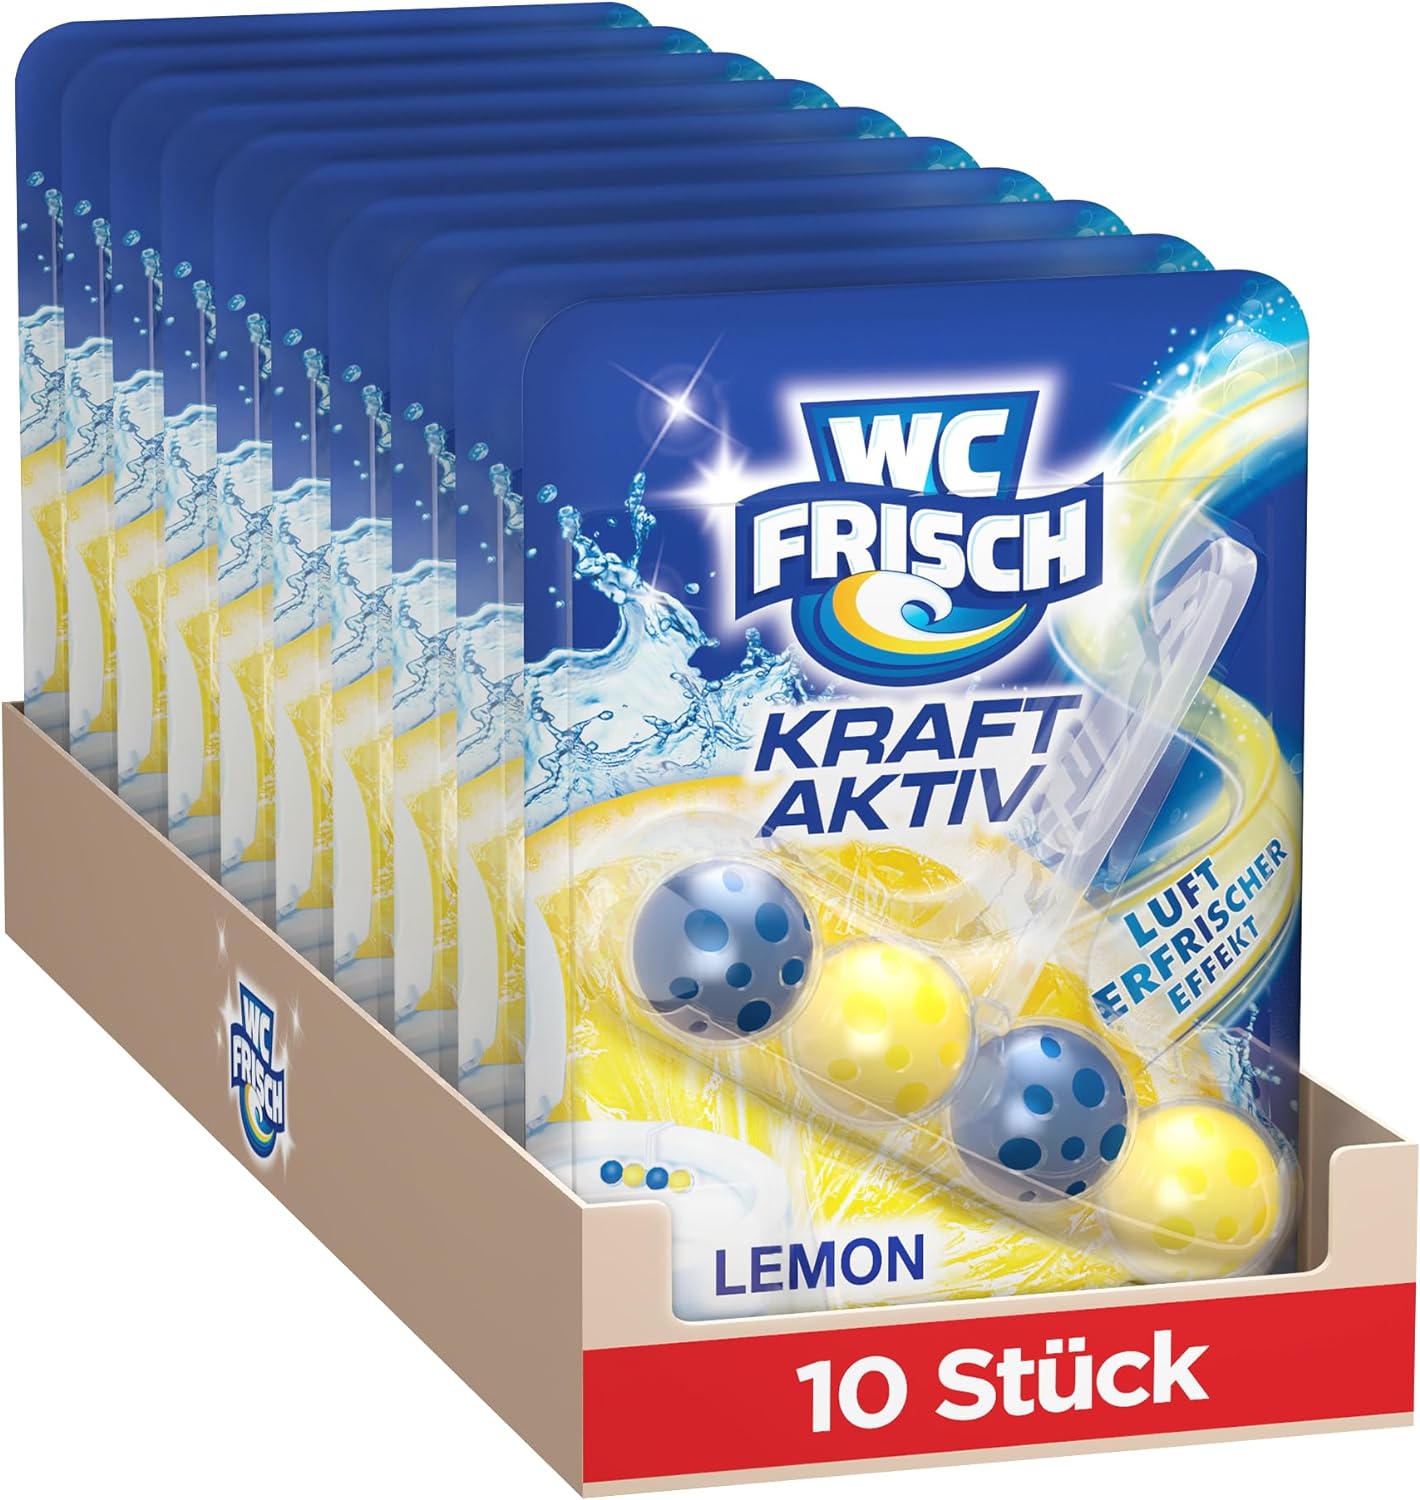 WC Frisch Blau Kraft-Aktiv závěsný blok se svěží vůní citrónu 10x50 g-VÝHODNÉ BALENÍ